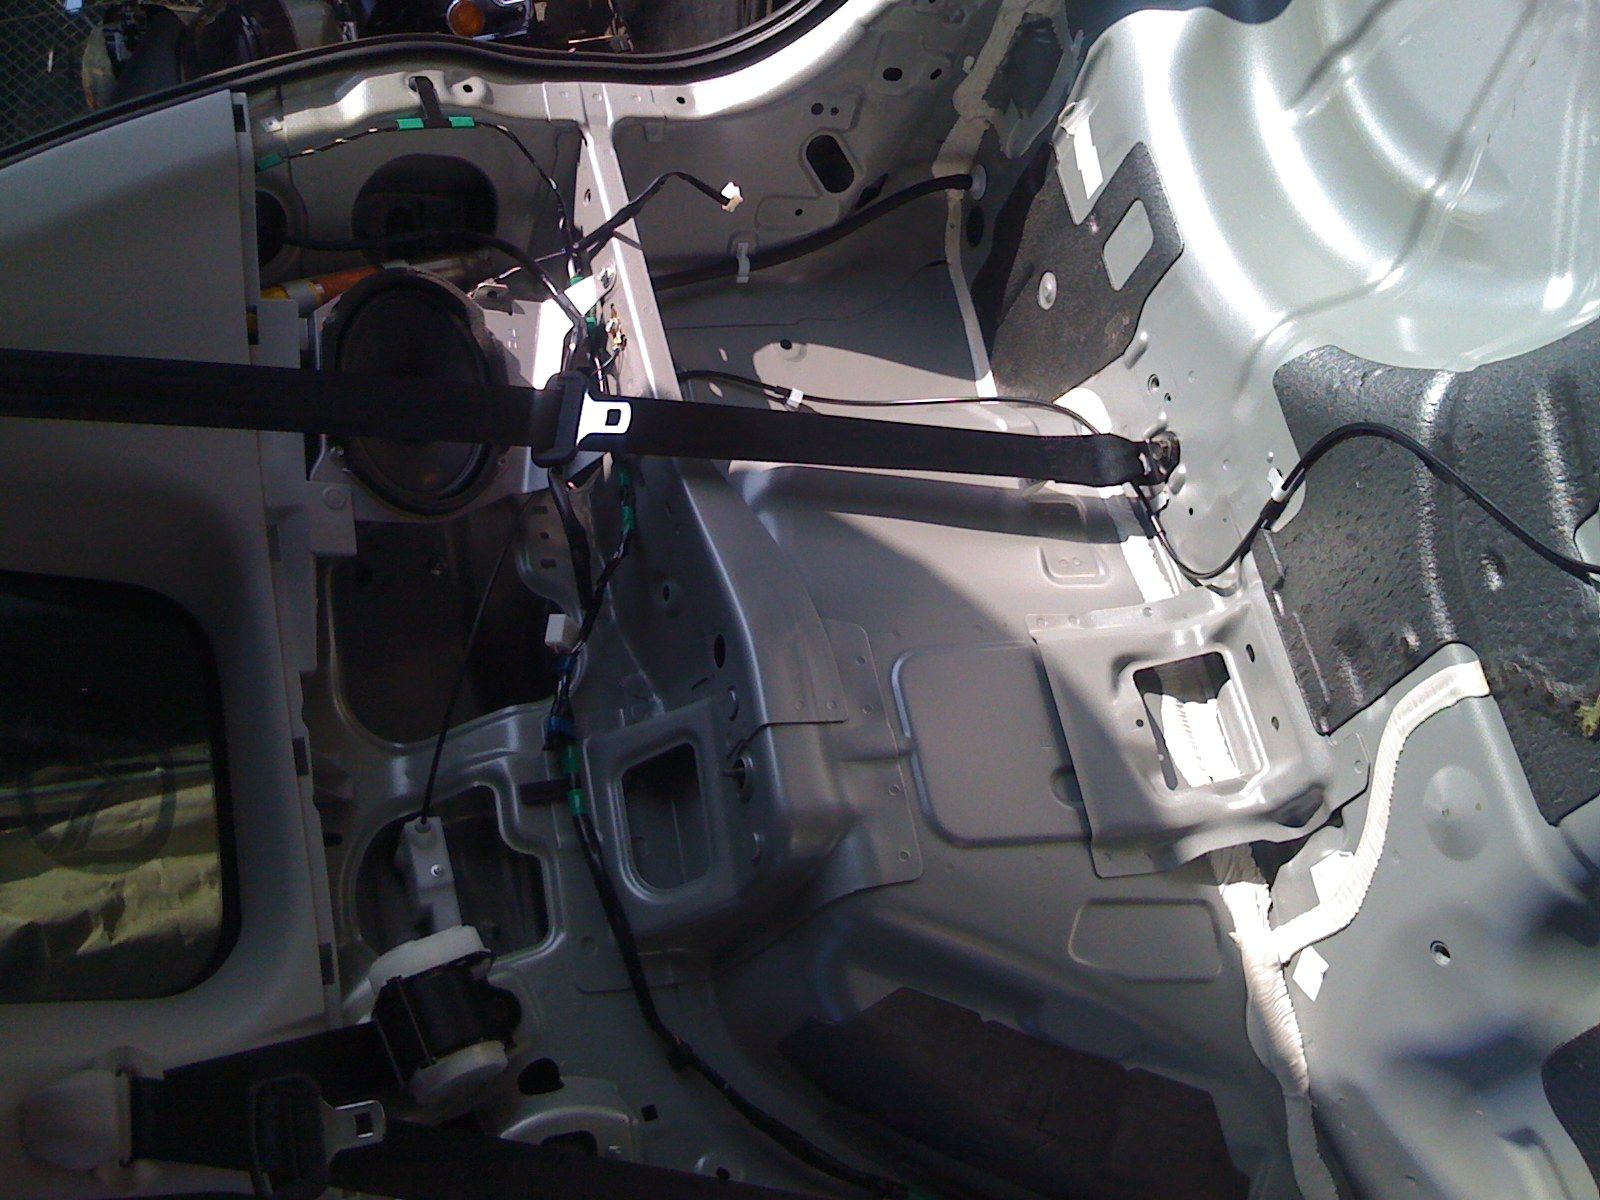 Mazda 5 interior 004.jpg